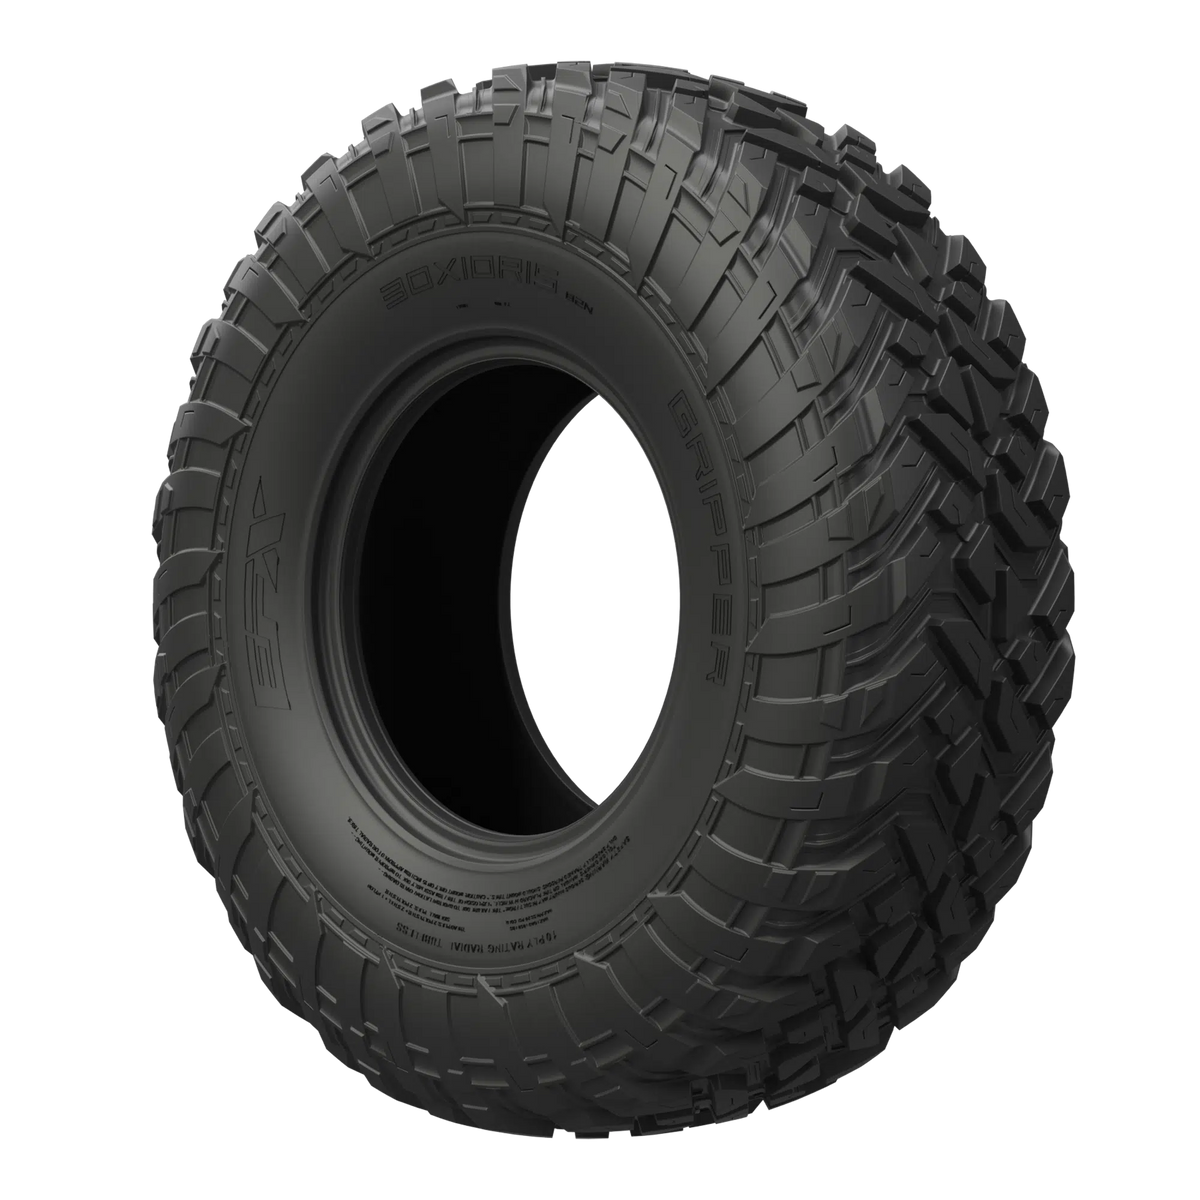 GRIPPER UTV-Tires-EFX-28X10-14-Black Market UTV